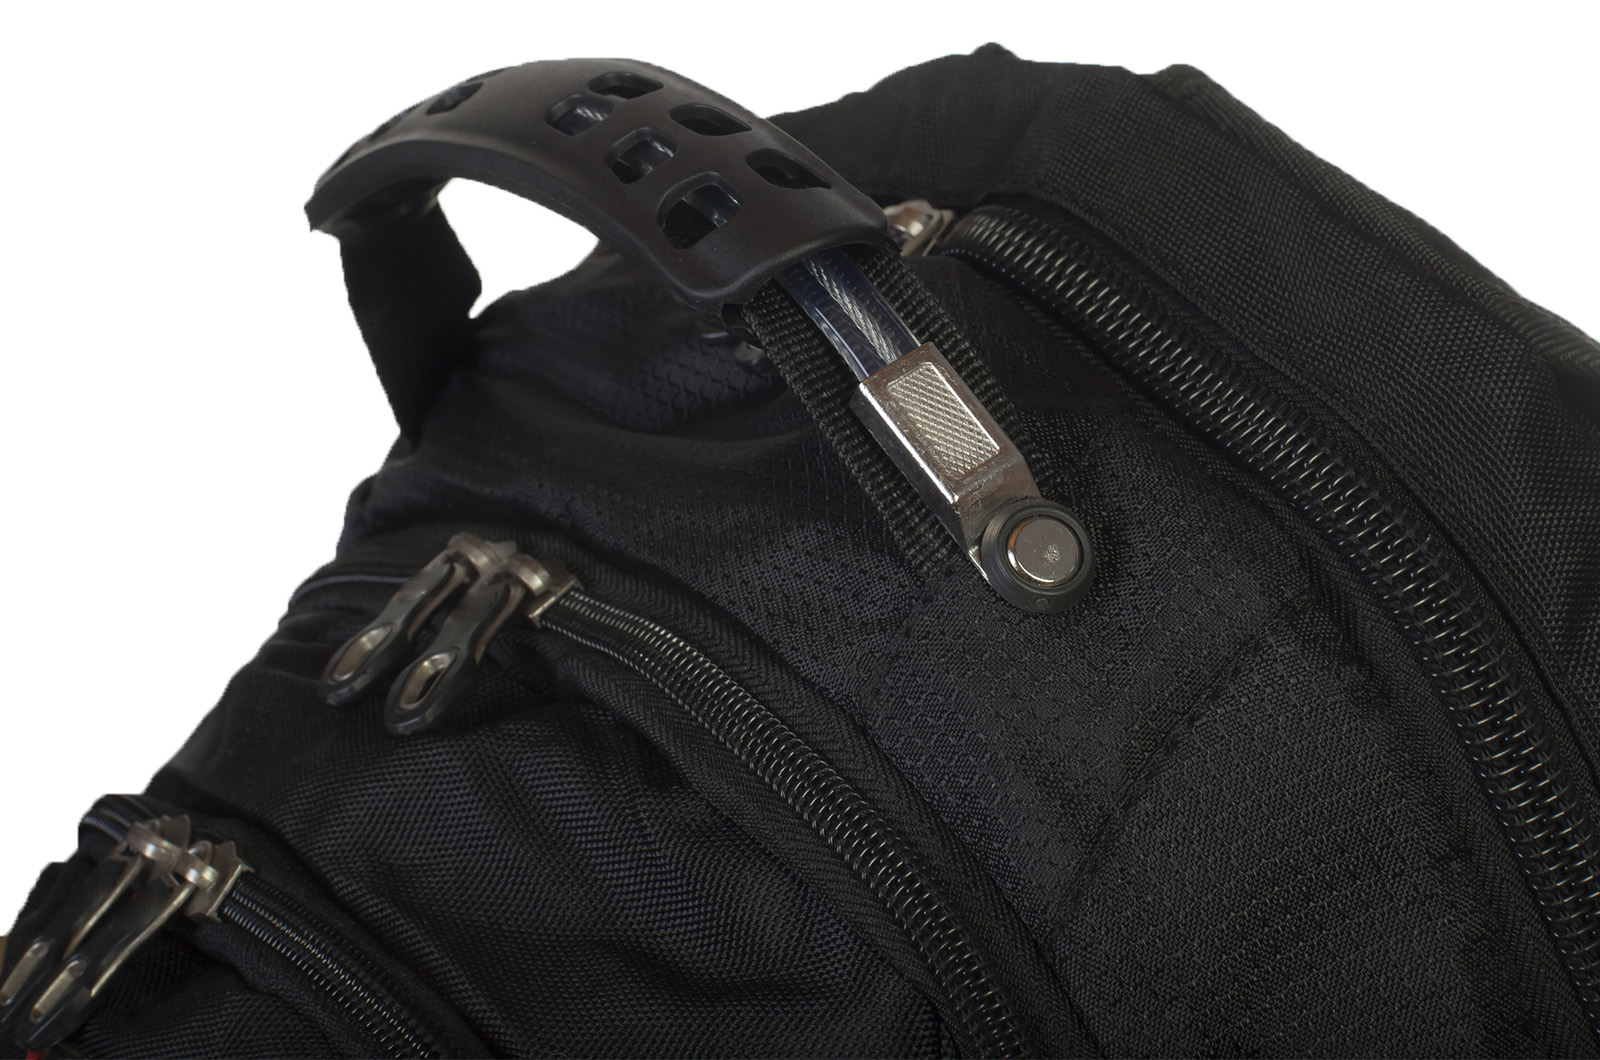 Оригинальный черный рюкзак с нашивкой Коловрат (29 л) 